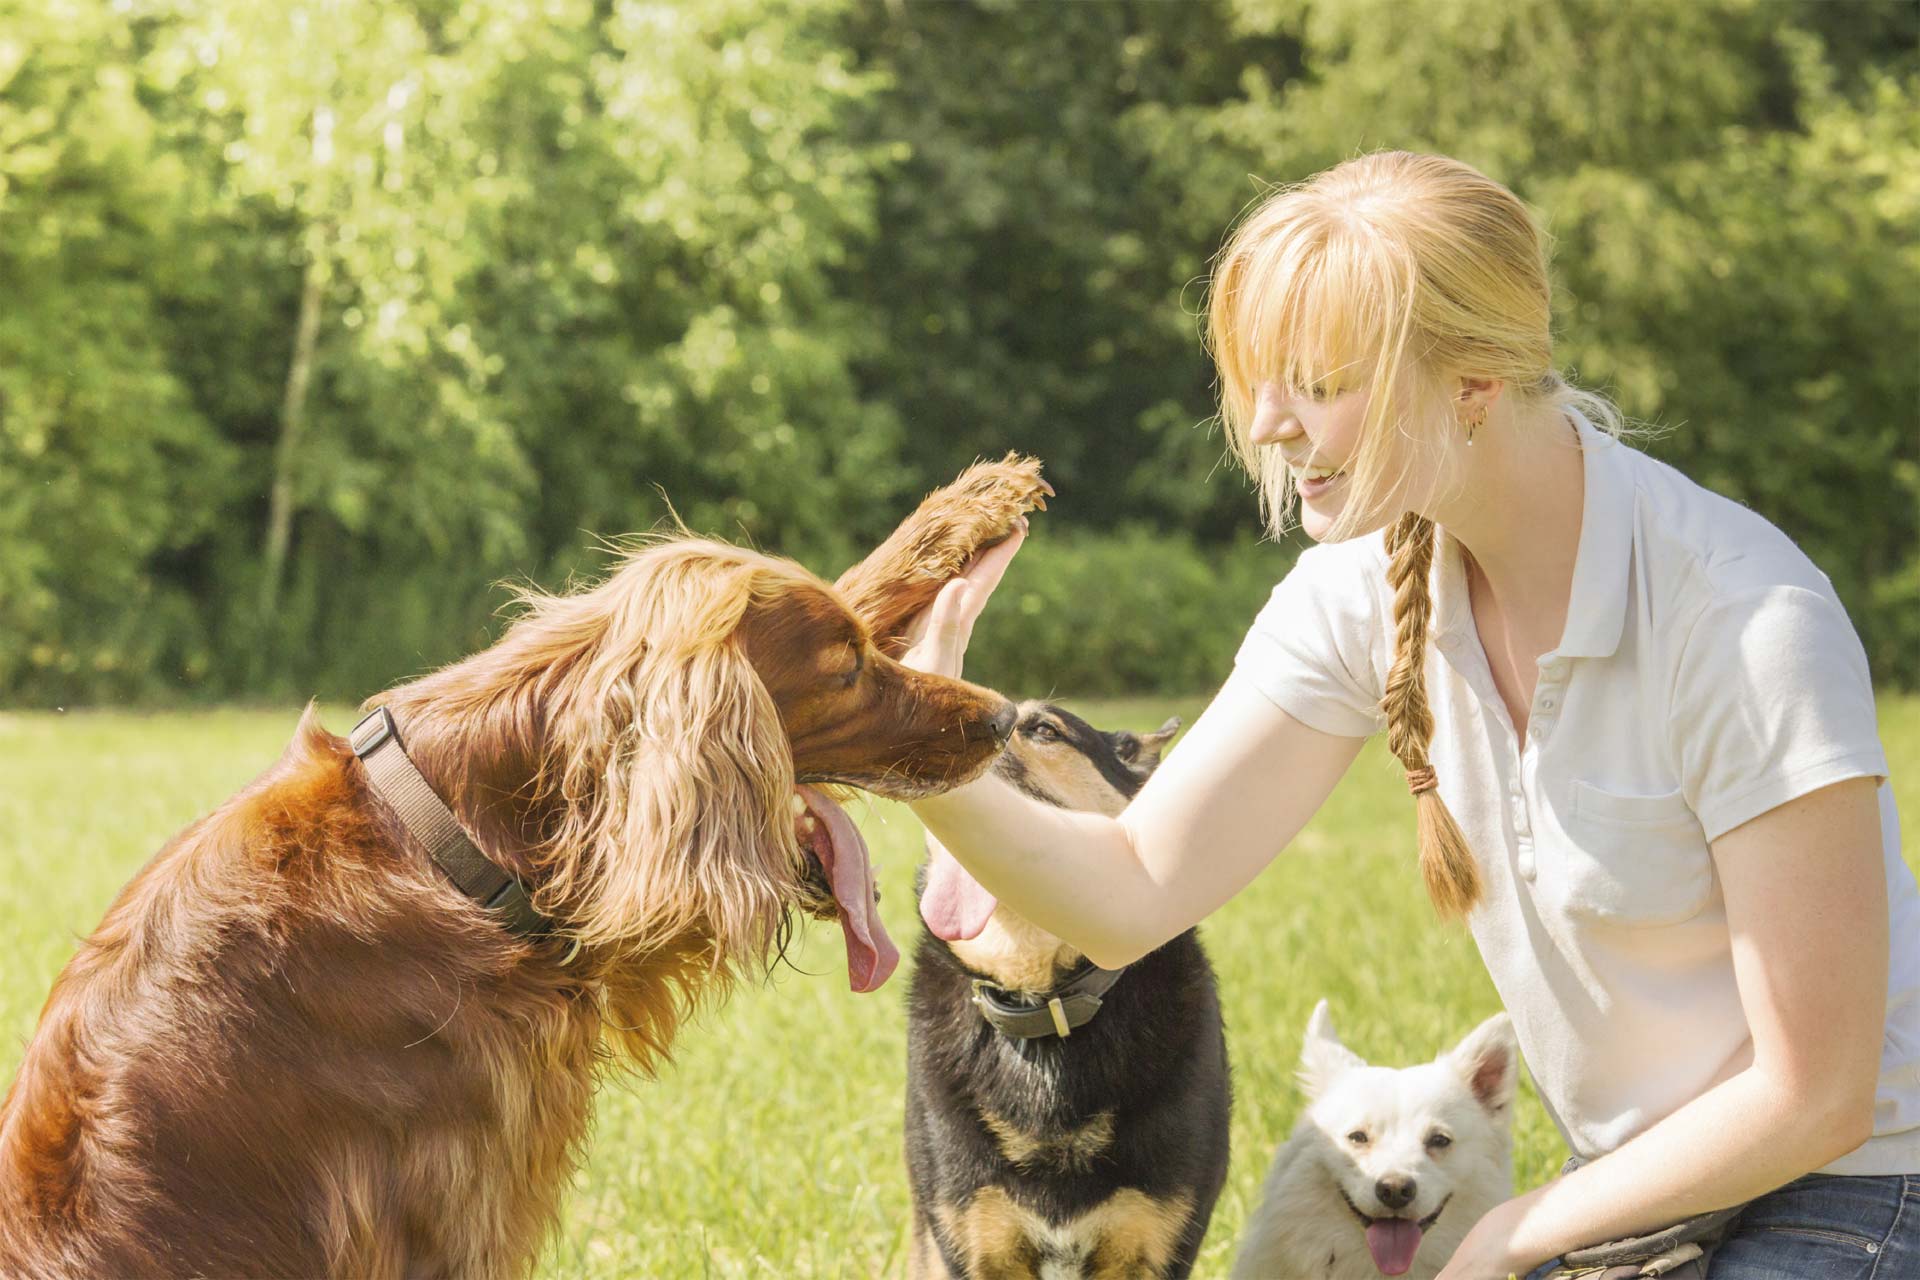 Cuando el perro y su dueño se ven directamente a los ojos liberan oxitocina, la hormona del amor y la felicidad